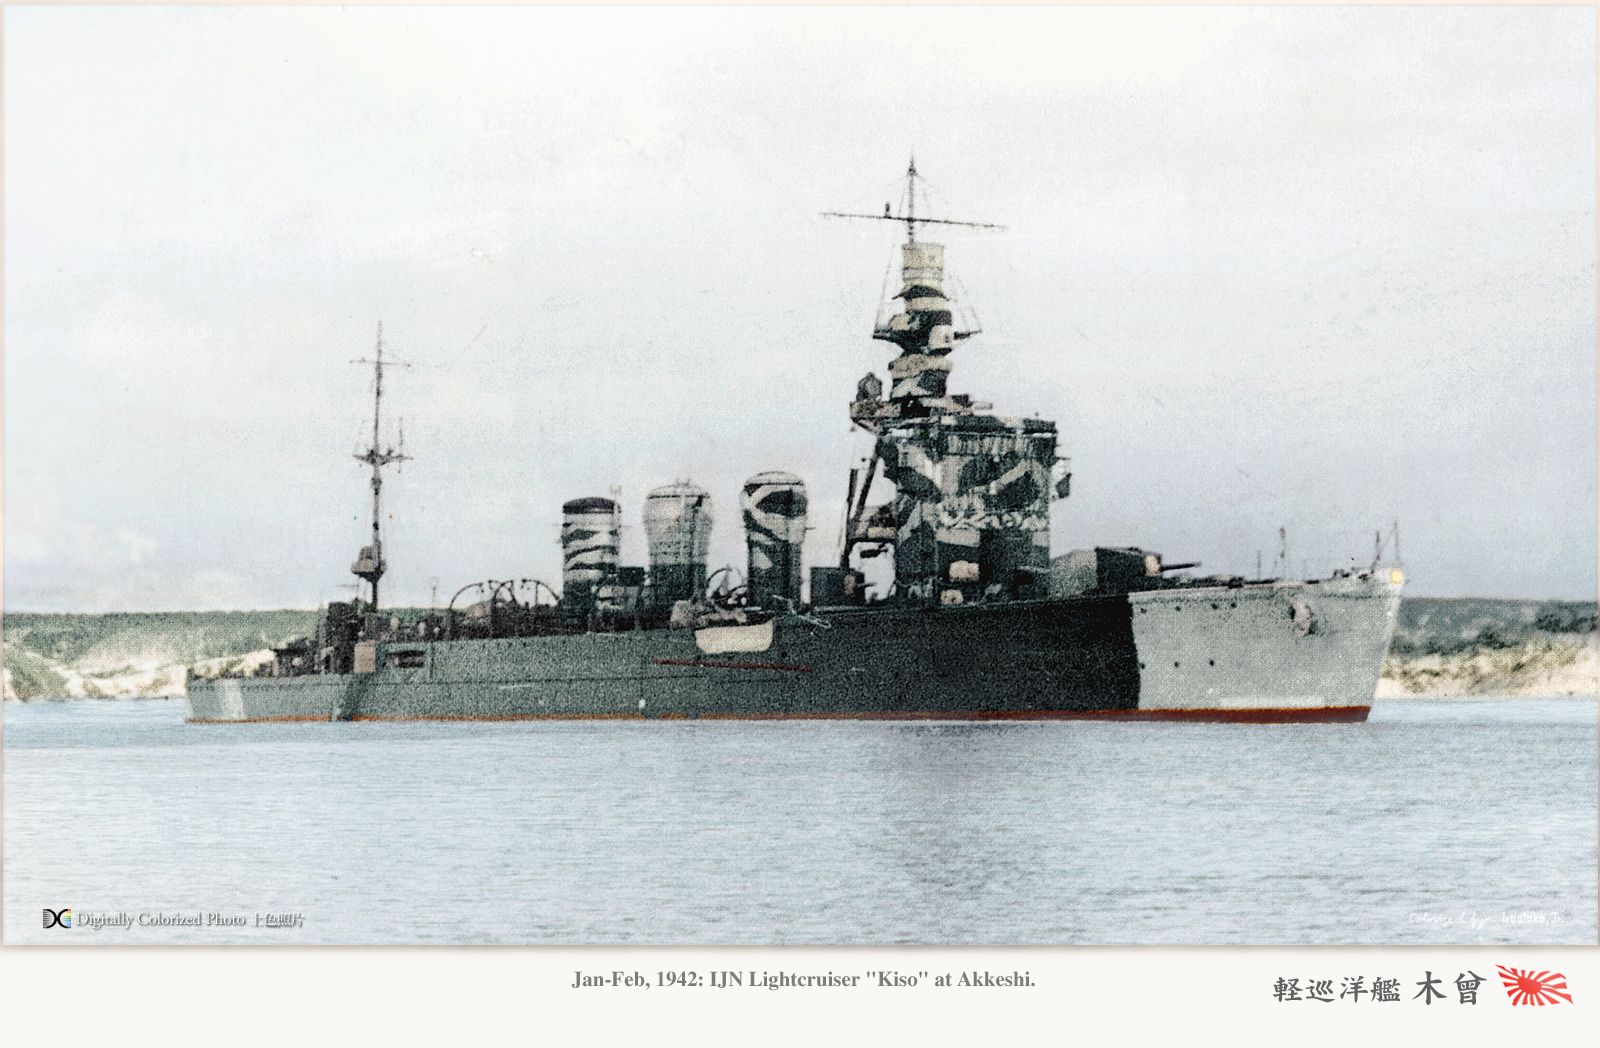 IJN Kiso in 1942